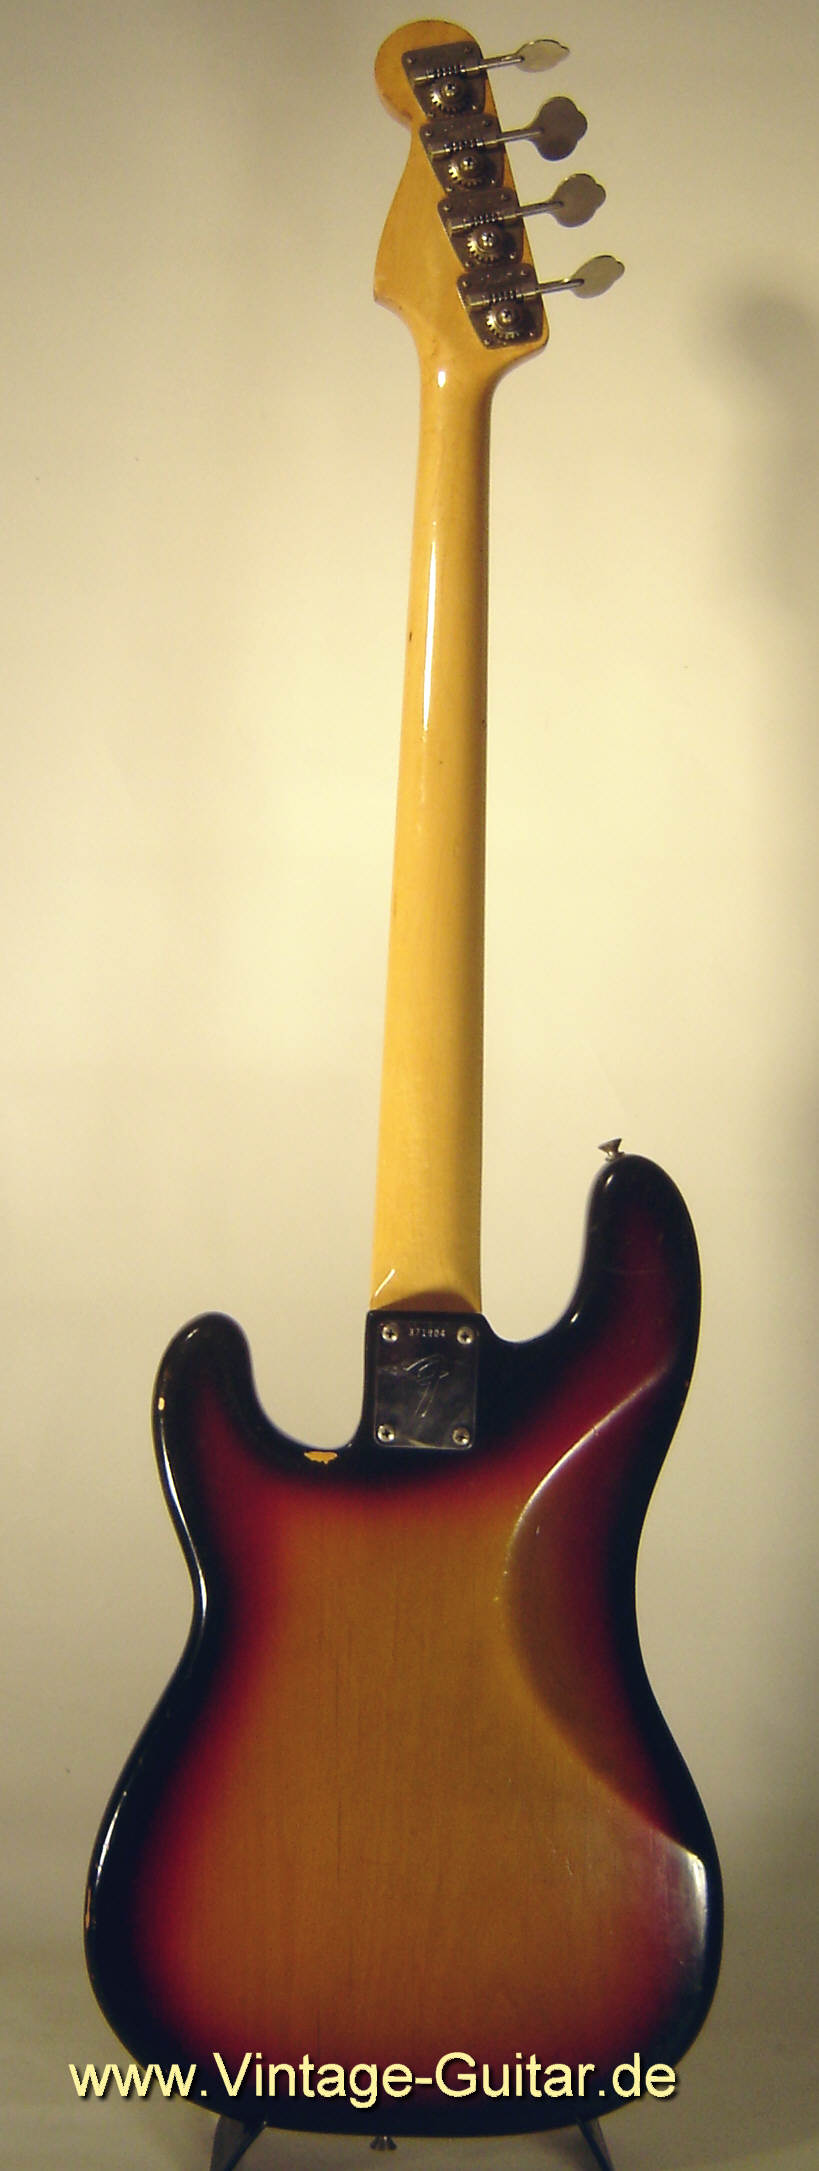 Fender-Precision-Bass-1972-sunburst-2.jpg